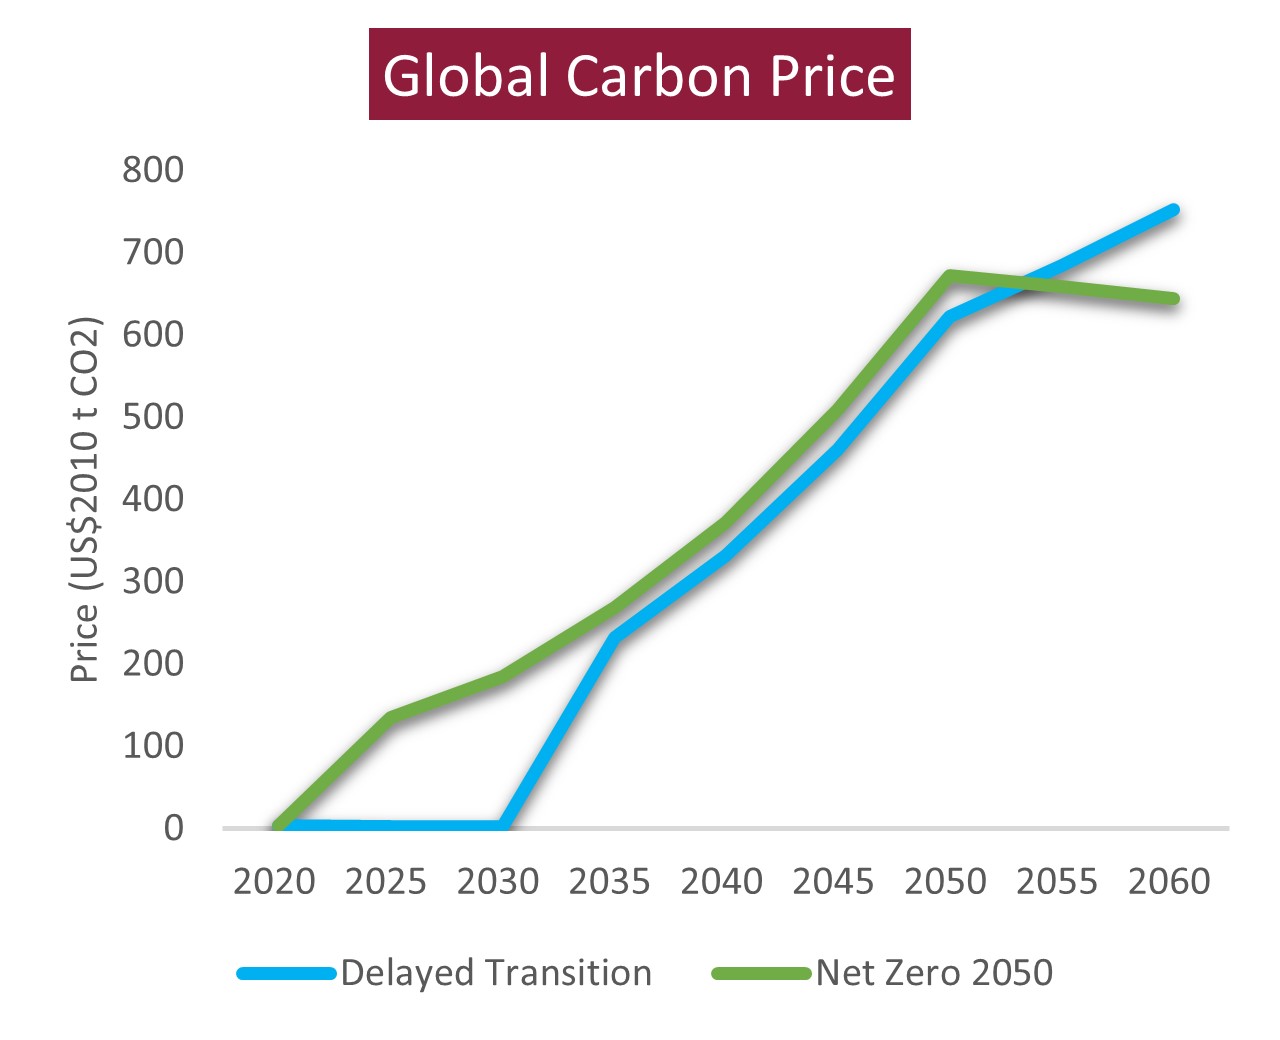 Prix ​​mondial du carbone basé sur une transition retardée par rapport à Net Zero 2050